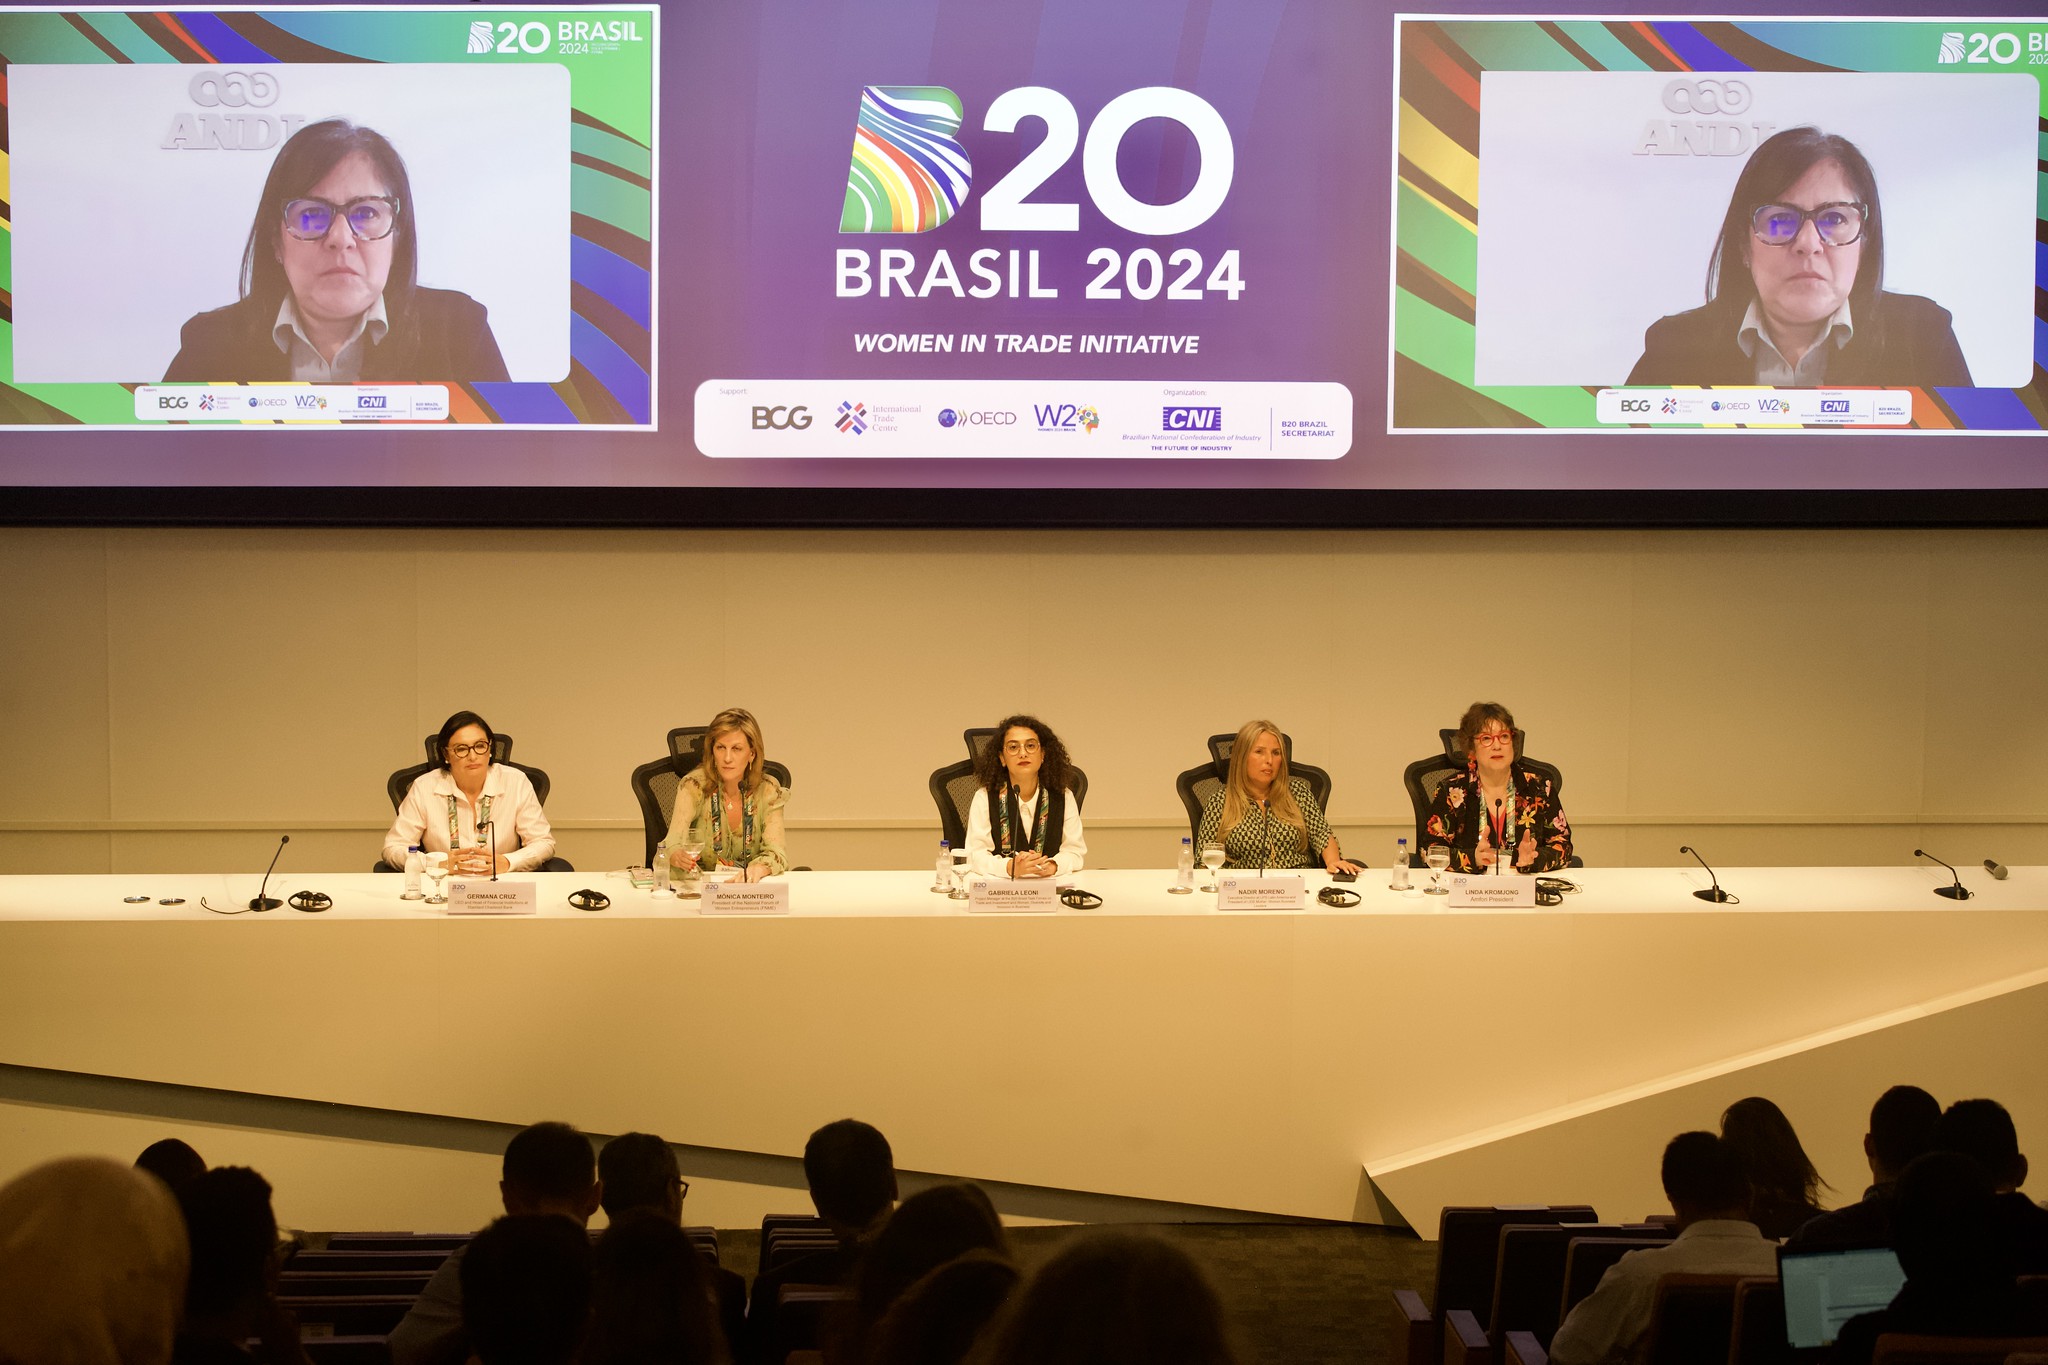 De izquierda a derecha, Tatiana Prazeres (G20), Constanza Negri (B20) y Janaína Gama (W20). Foto: Divulgación/CNI